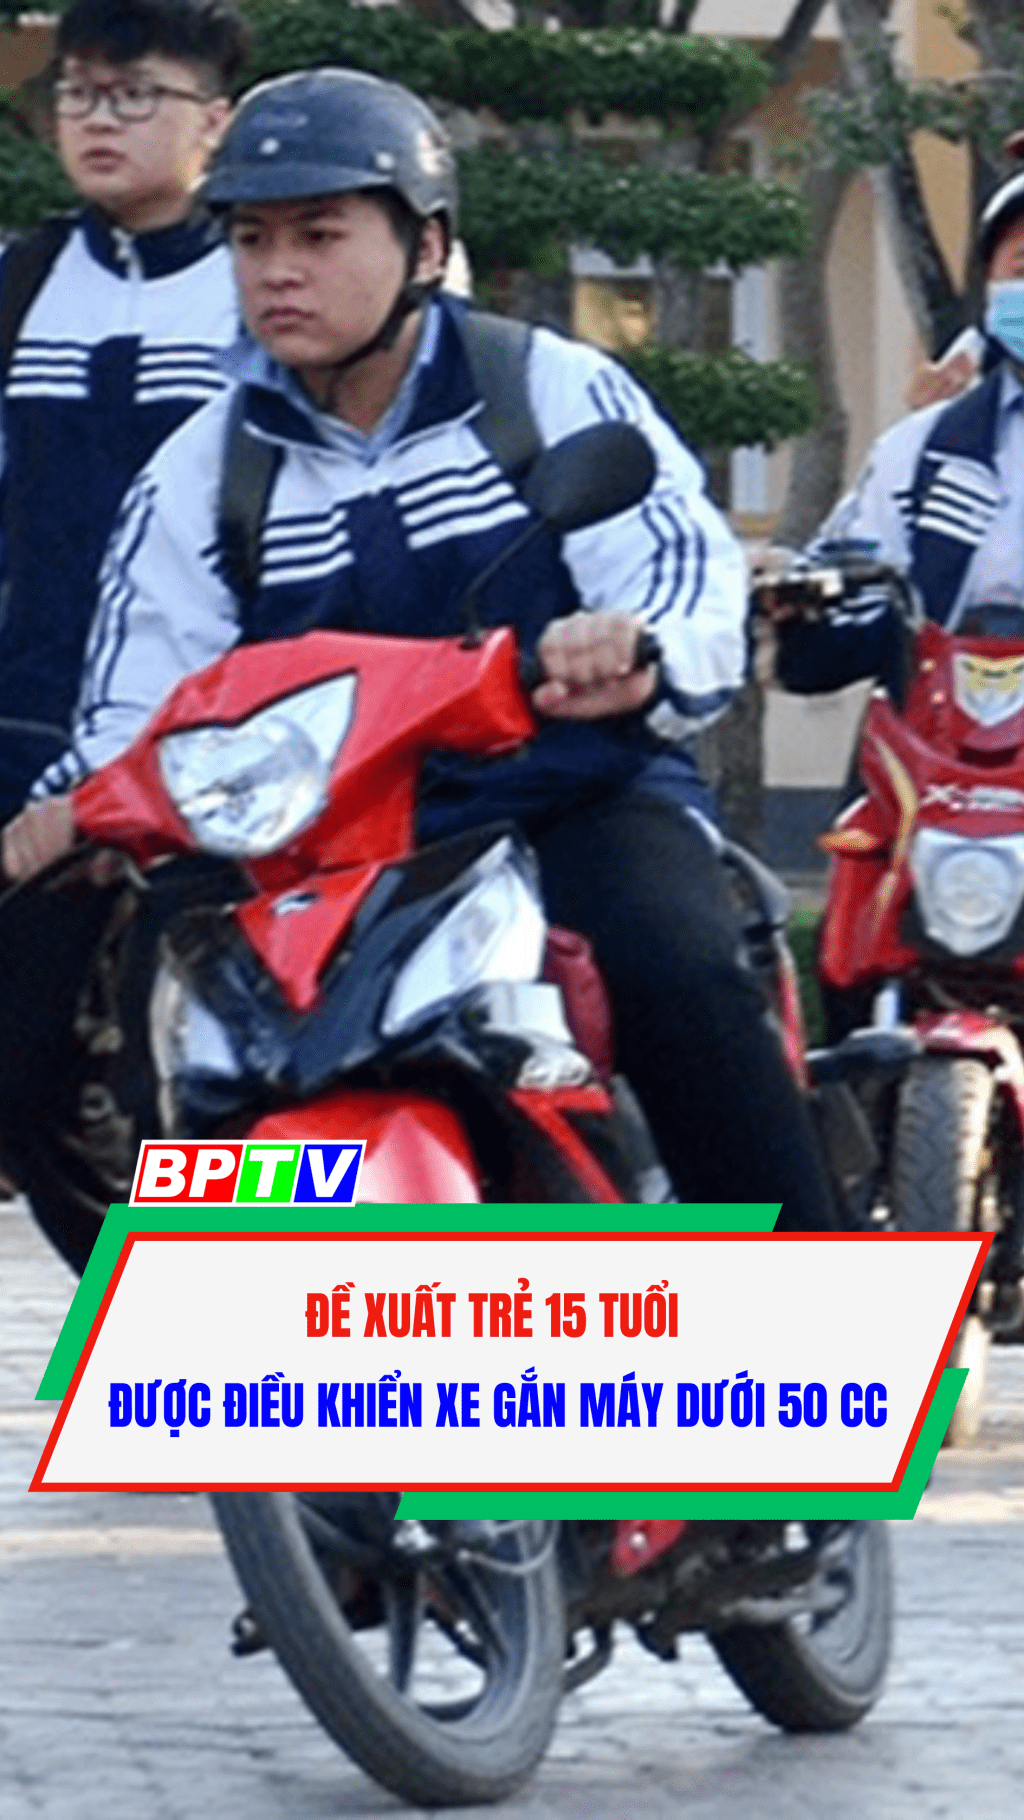 Đề xuất trẻ 15 tuổi được điều khiển xe gắn máy dưới 50 cc #shorts